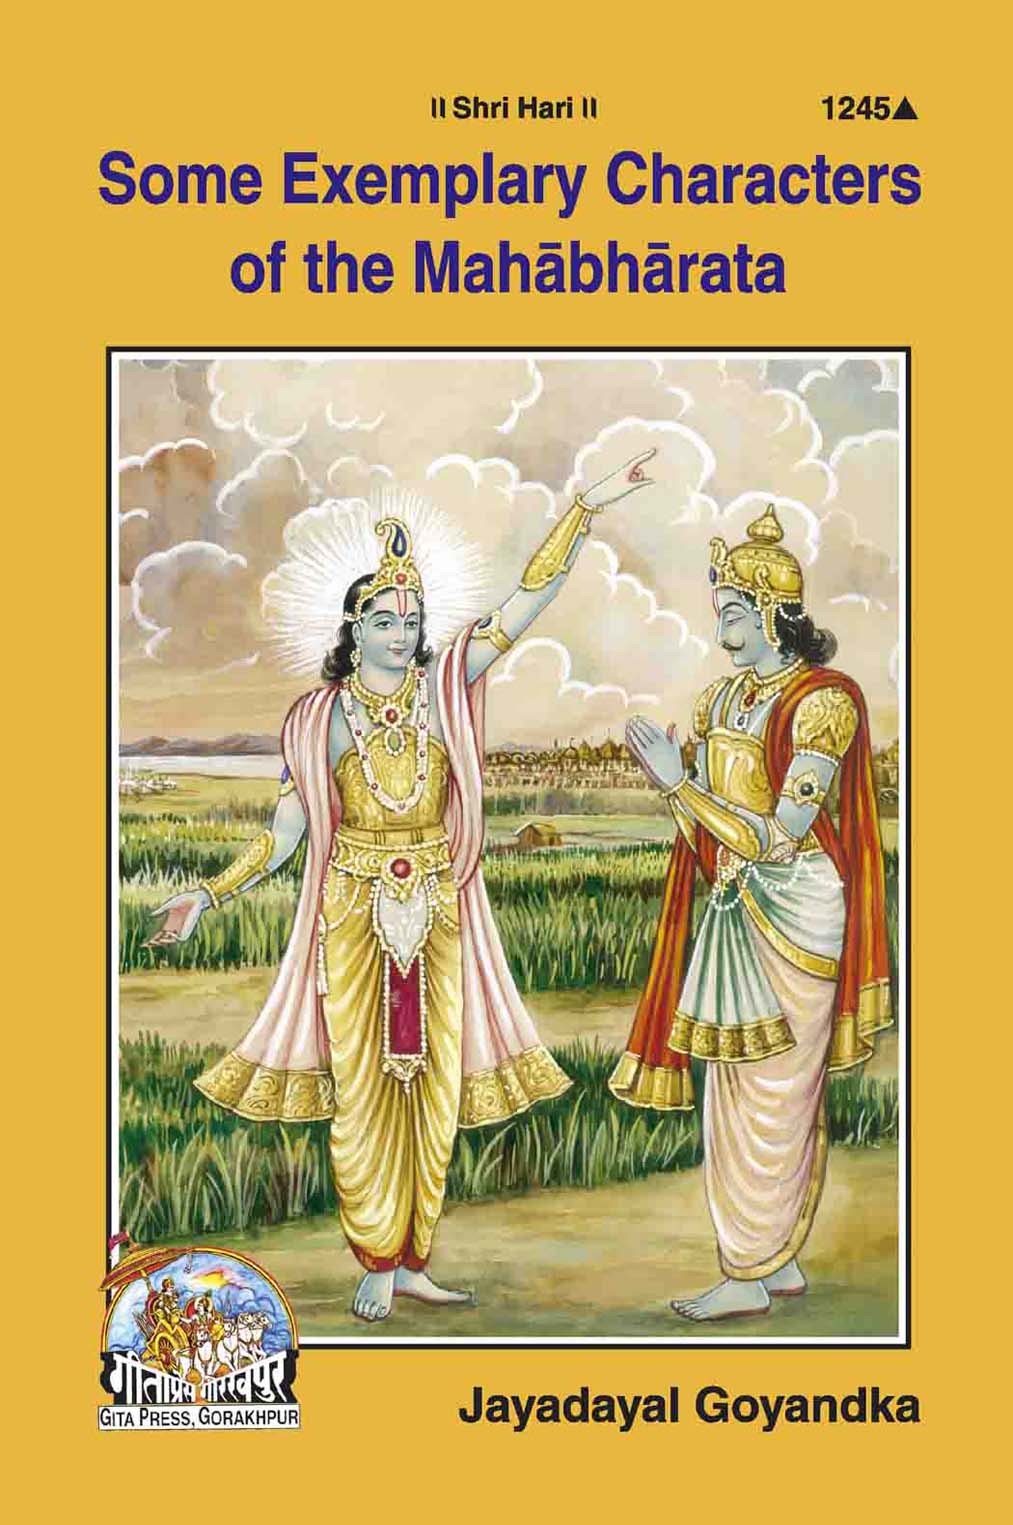 Some Exemplary Characters of The Mahabharata by Gita Press